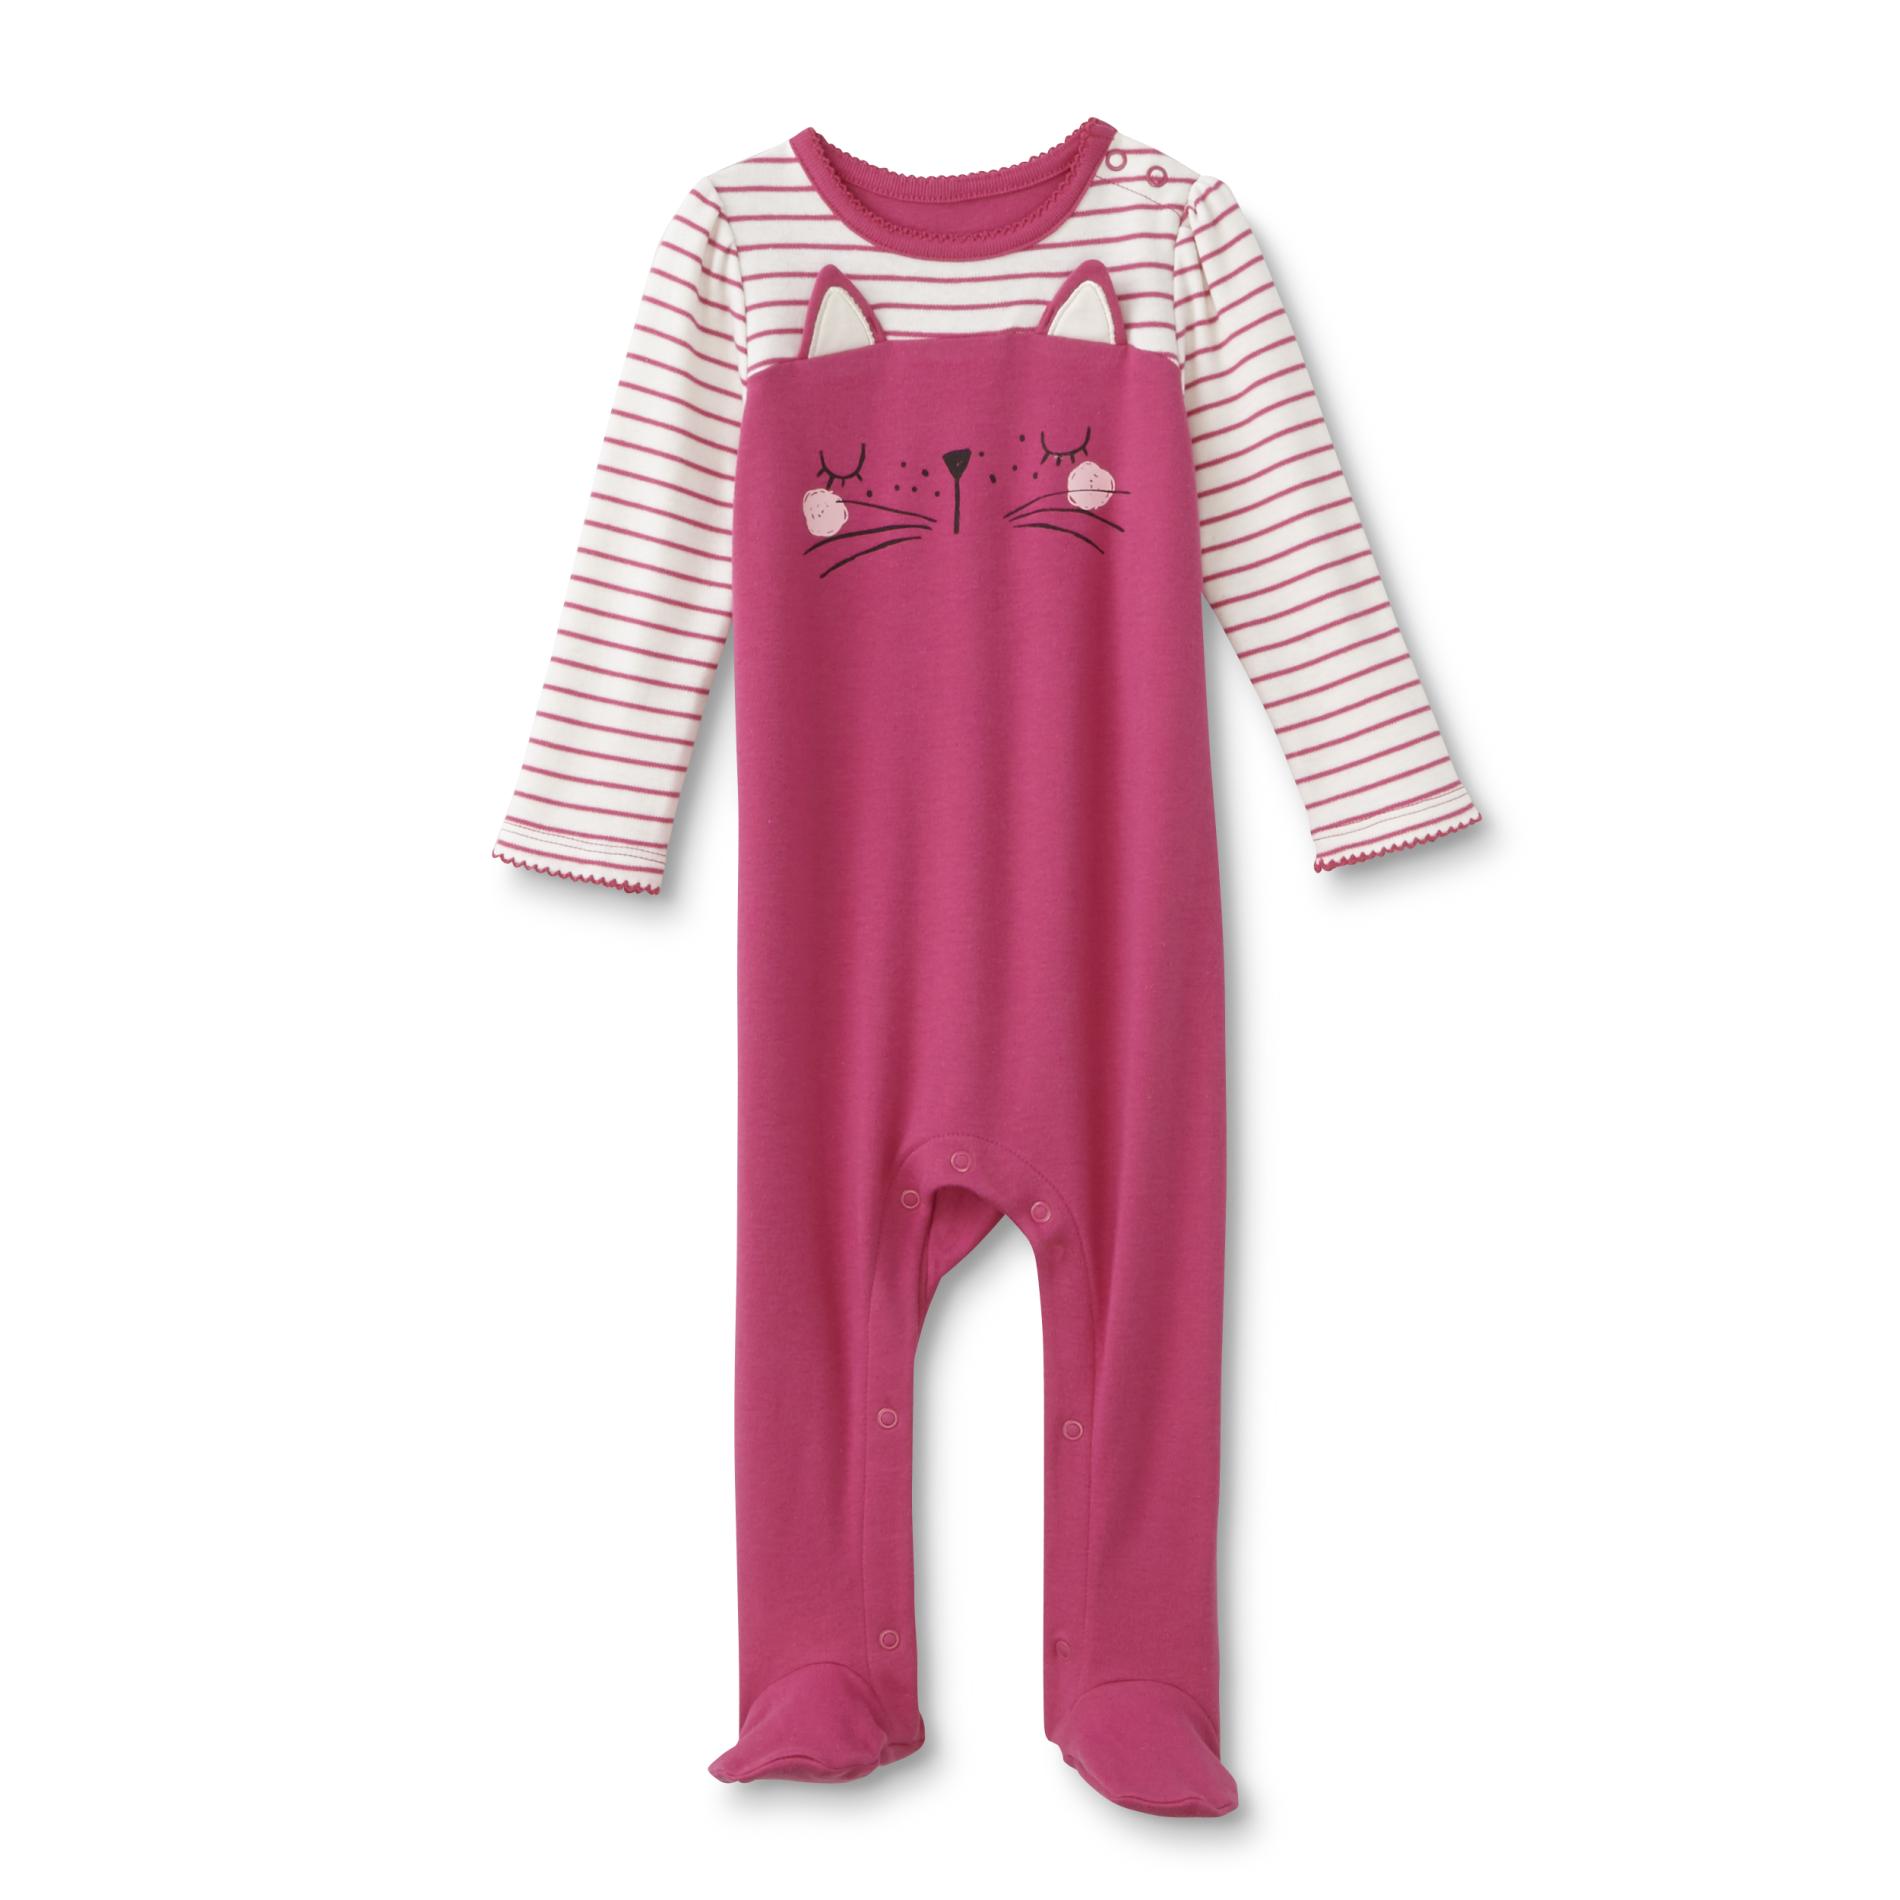 Small Wonders Newborn Girl's Sleeper Pajamas - Cat